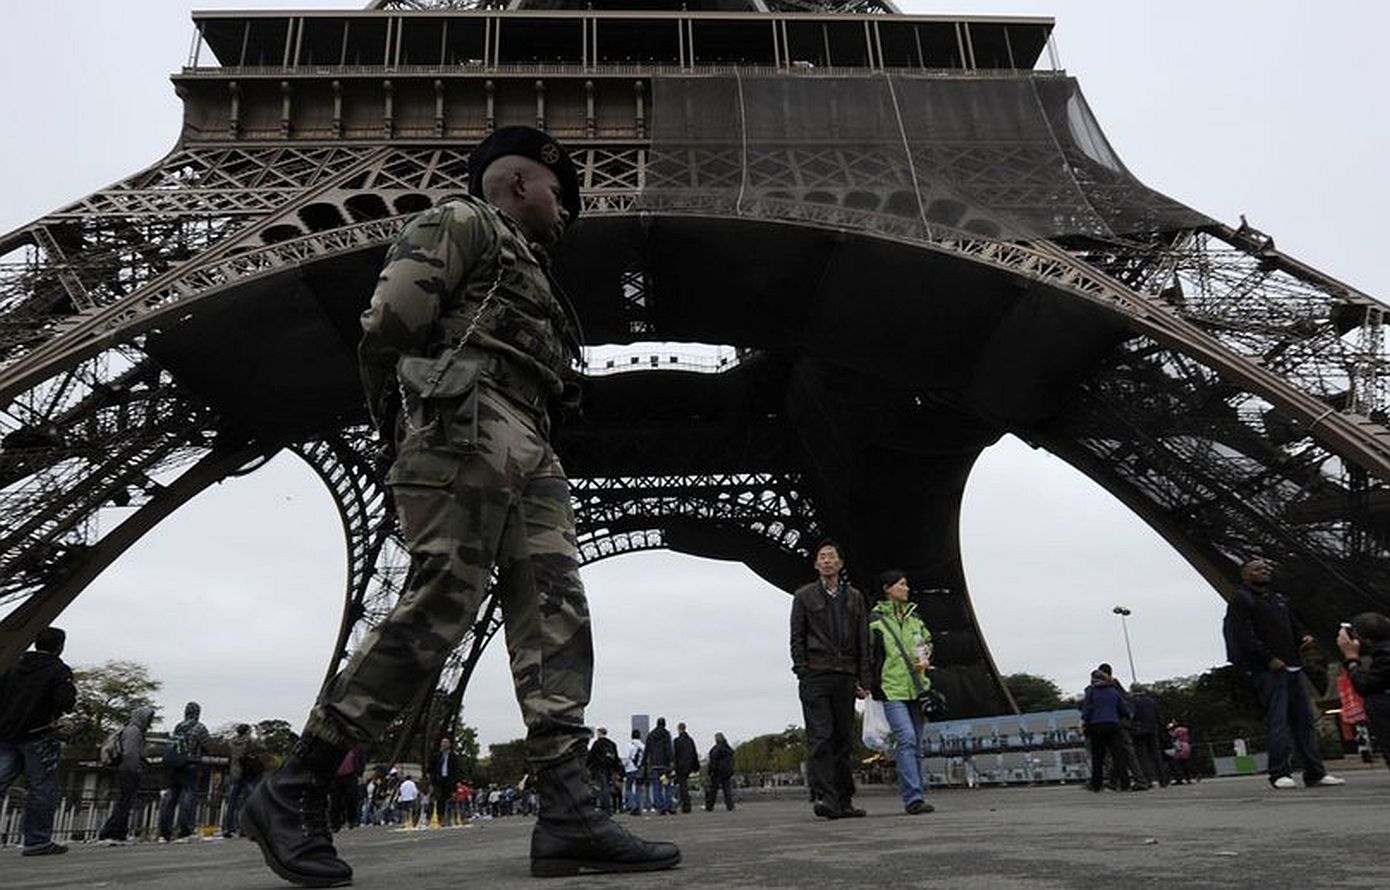 Σε αυξημένη επιφυλακη η Ευρώπη μετά το την τρομοκρατική επίθεση στην Μόσχα – Στο ύψιστο επίπεδο συναγερμού η Γαλλία